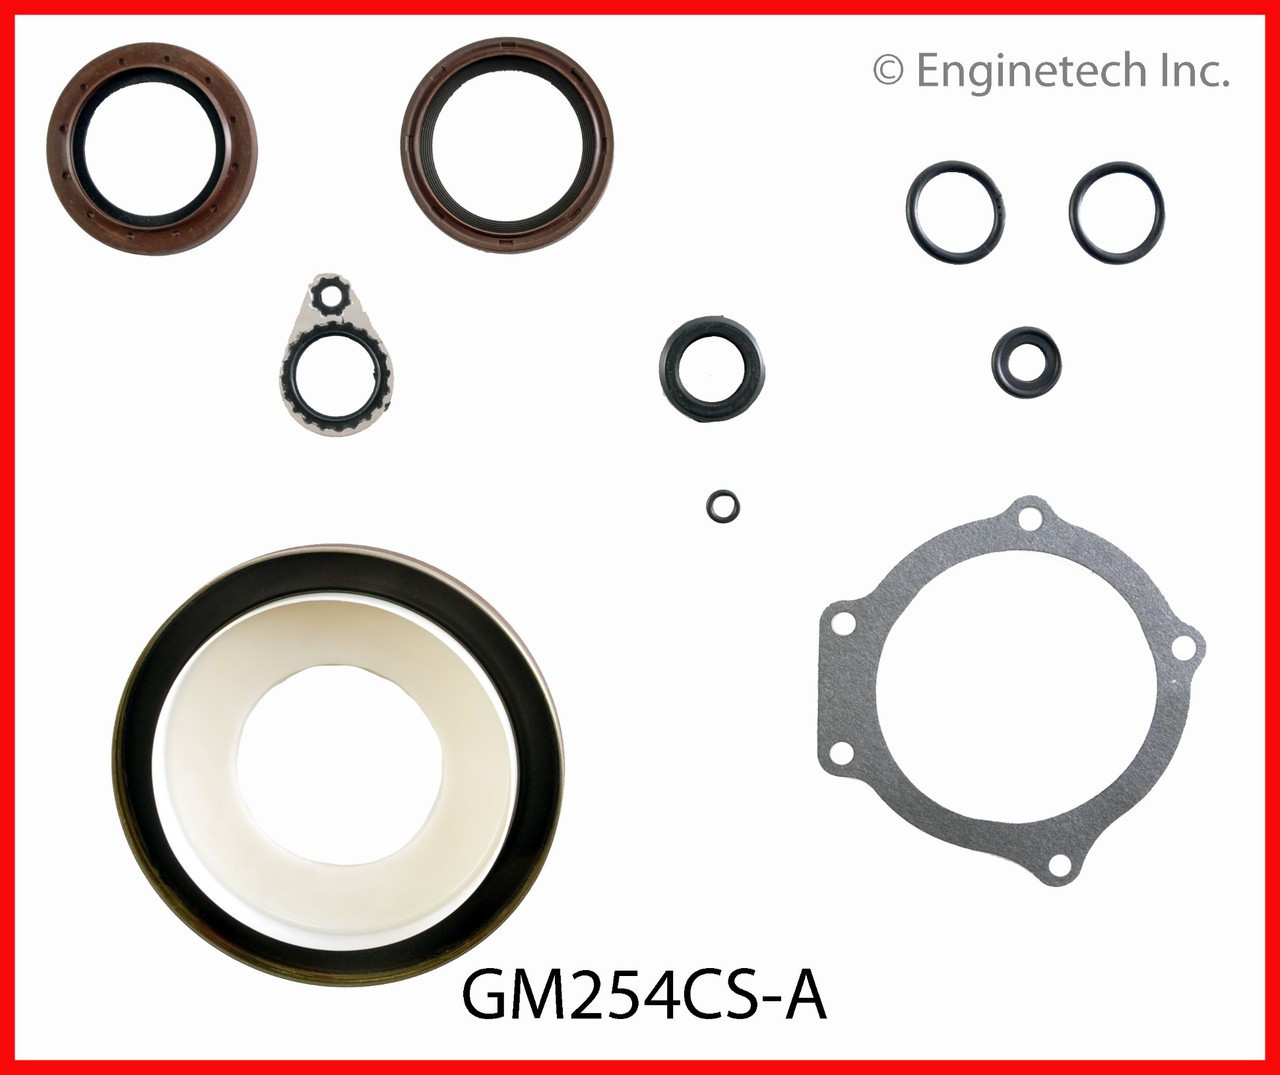 Engine Conversion Gasket Set - Kit Part - GM254CS-A